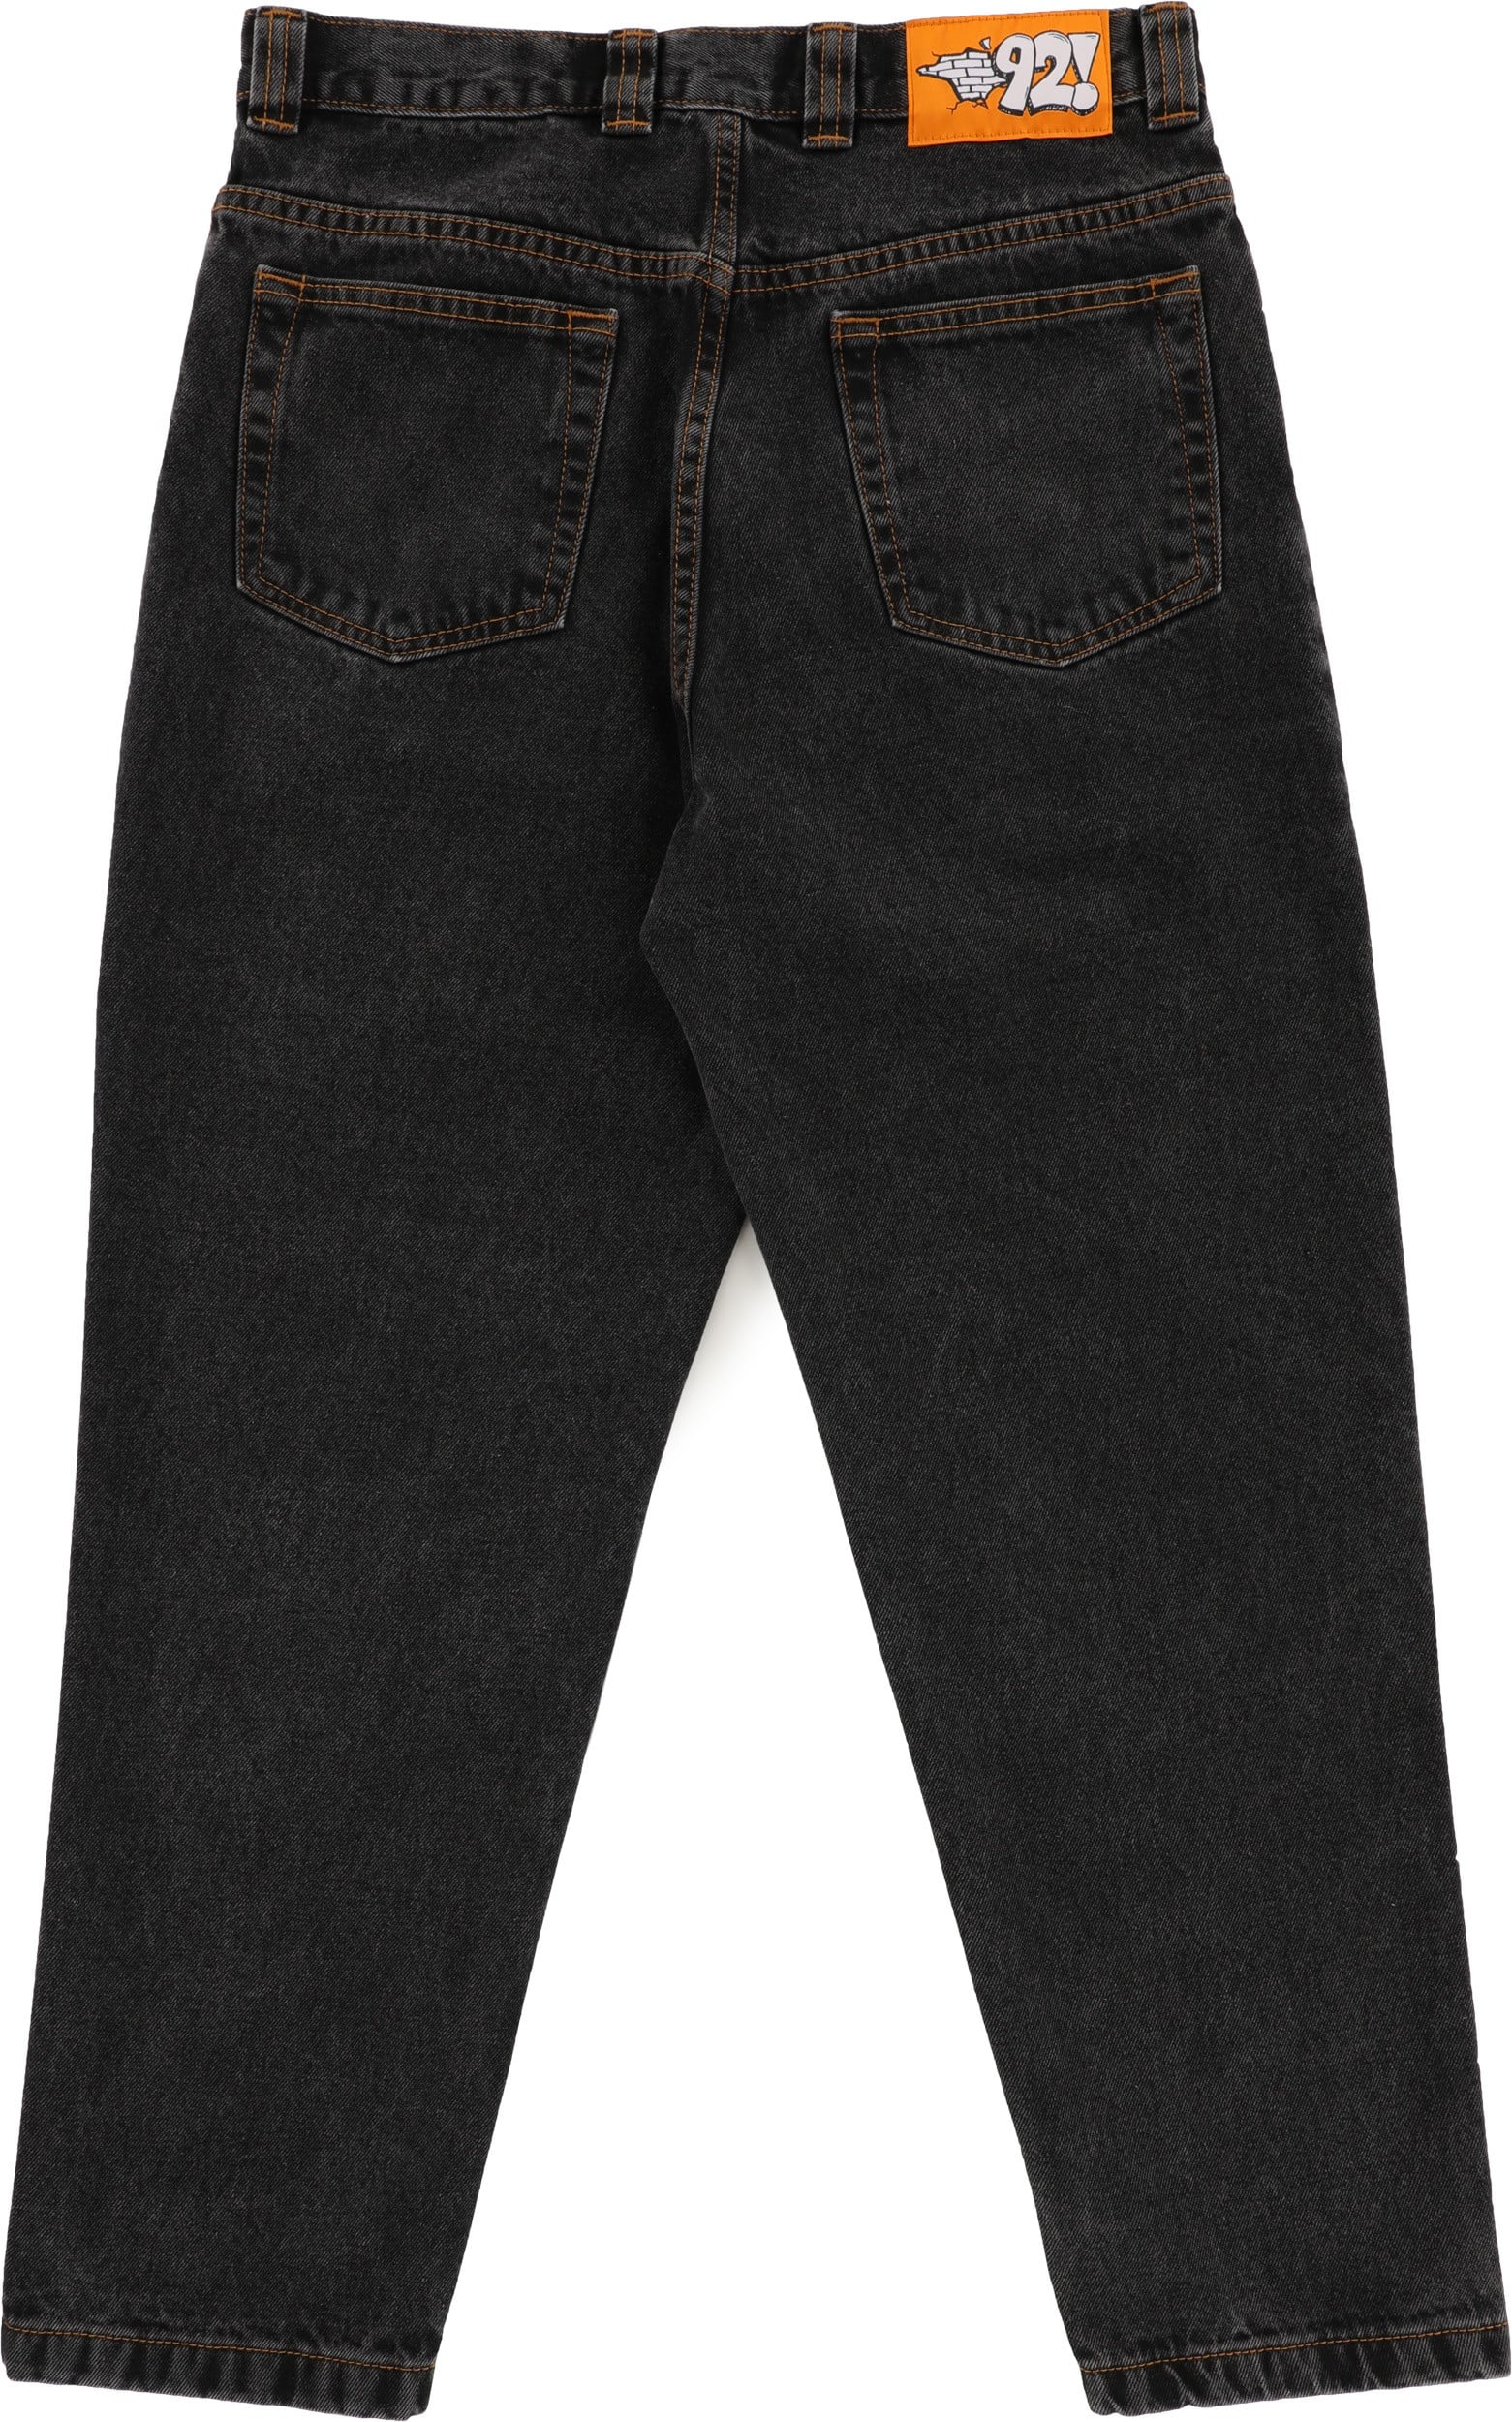 Polar Skate Co. '92! Denim Jeans - washed black | Tactics 